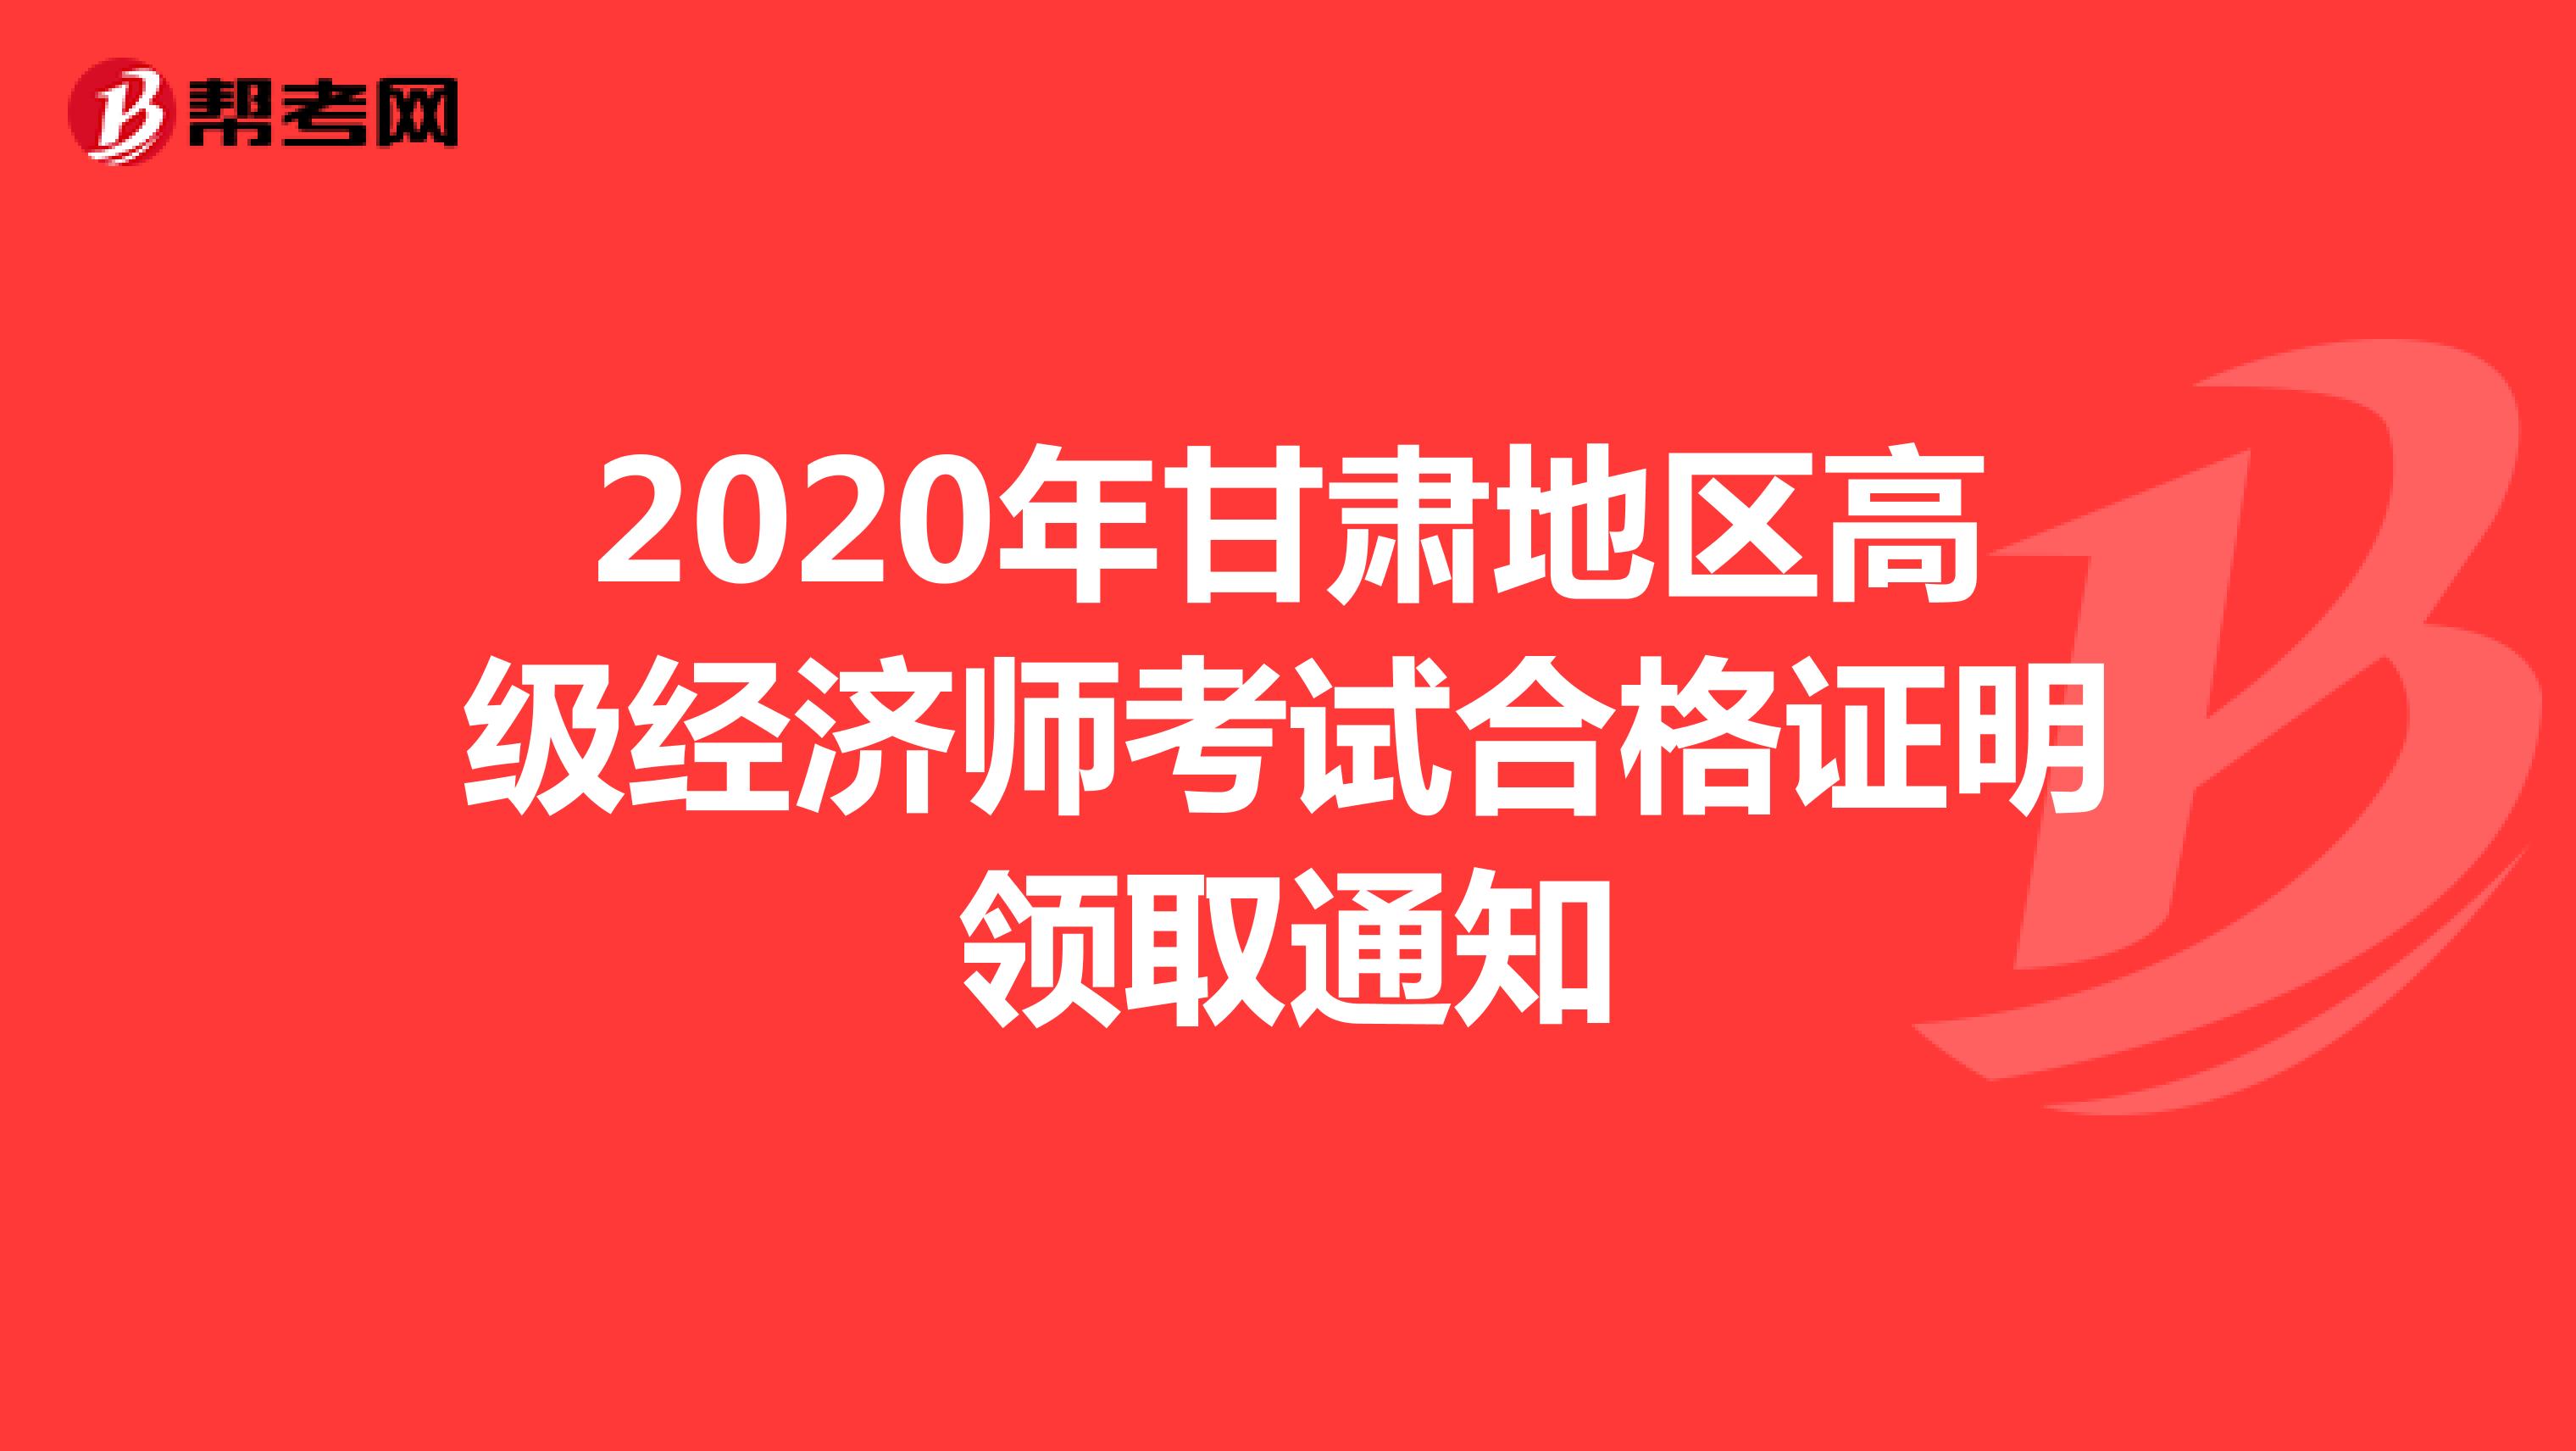 2020年甘肃地区高级经济师考试合格证明领取通知